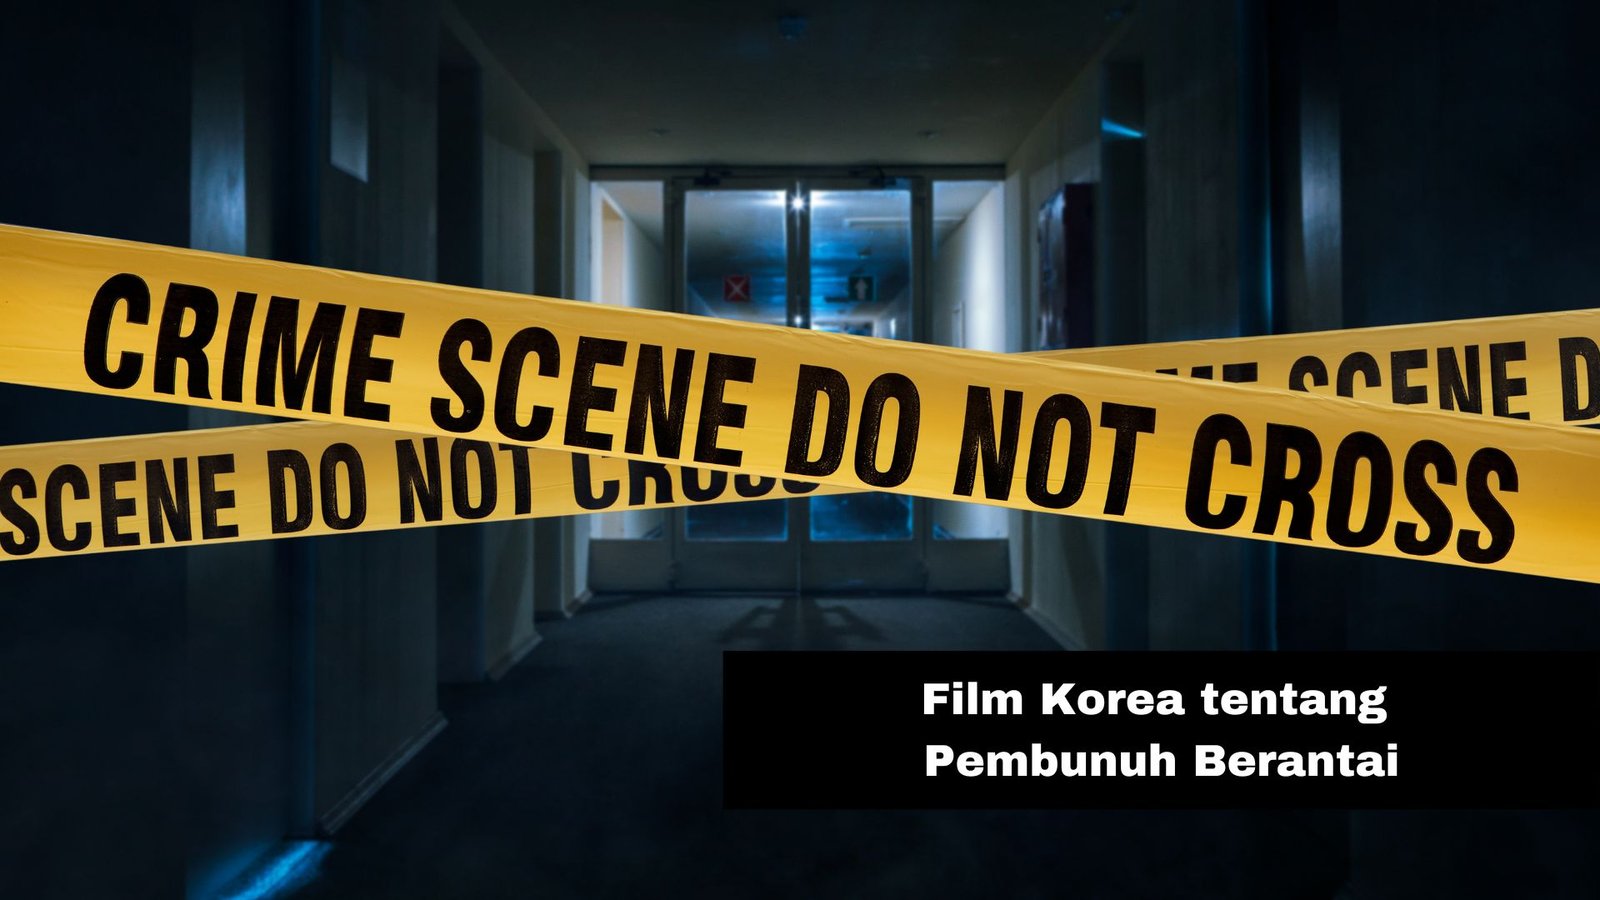 Film Korea Tentang Pembunuhan Berantai